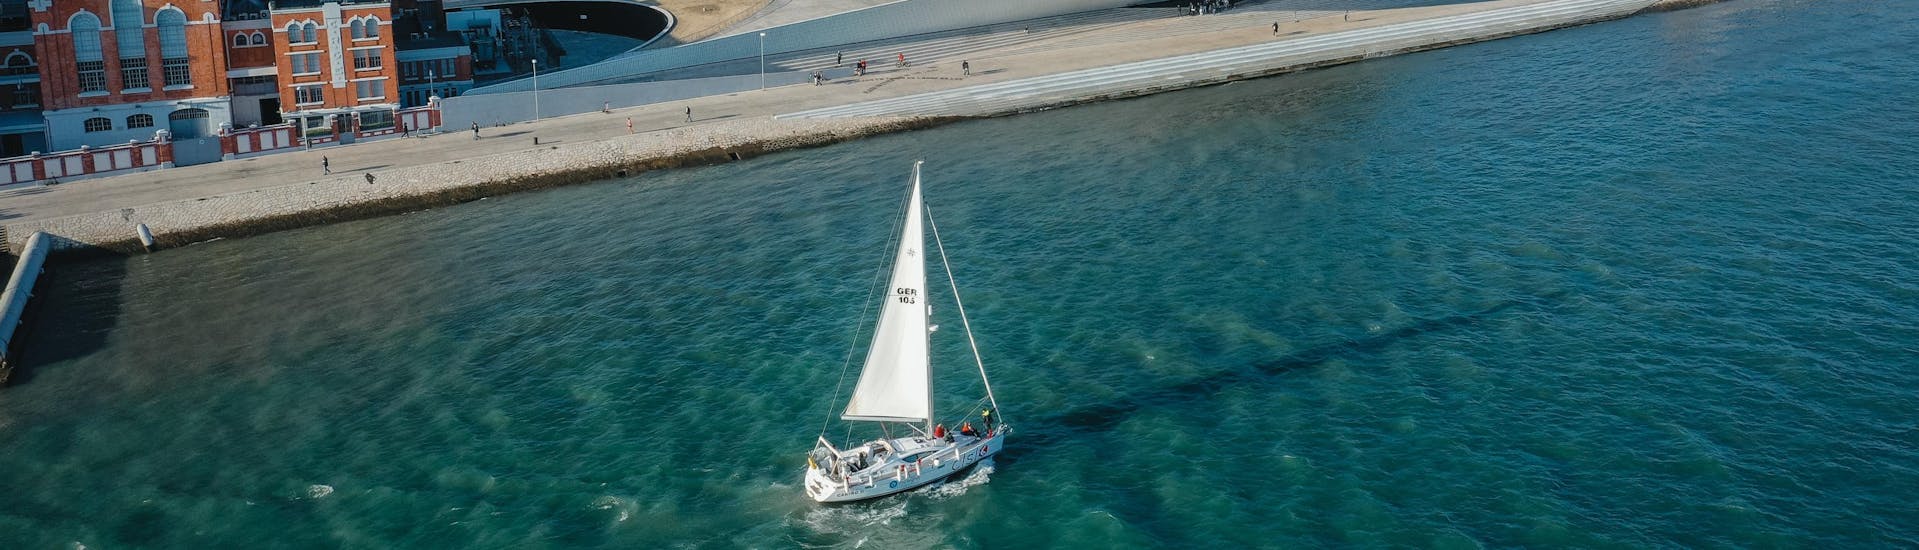 Privé zeilboottocht van Doca de Alcântara naar Taag (Tejo) met toeristische attracties.